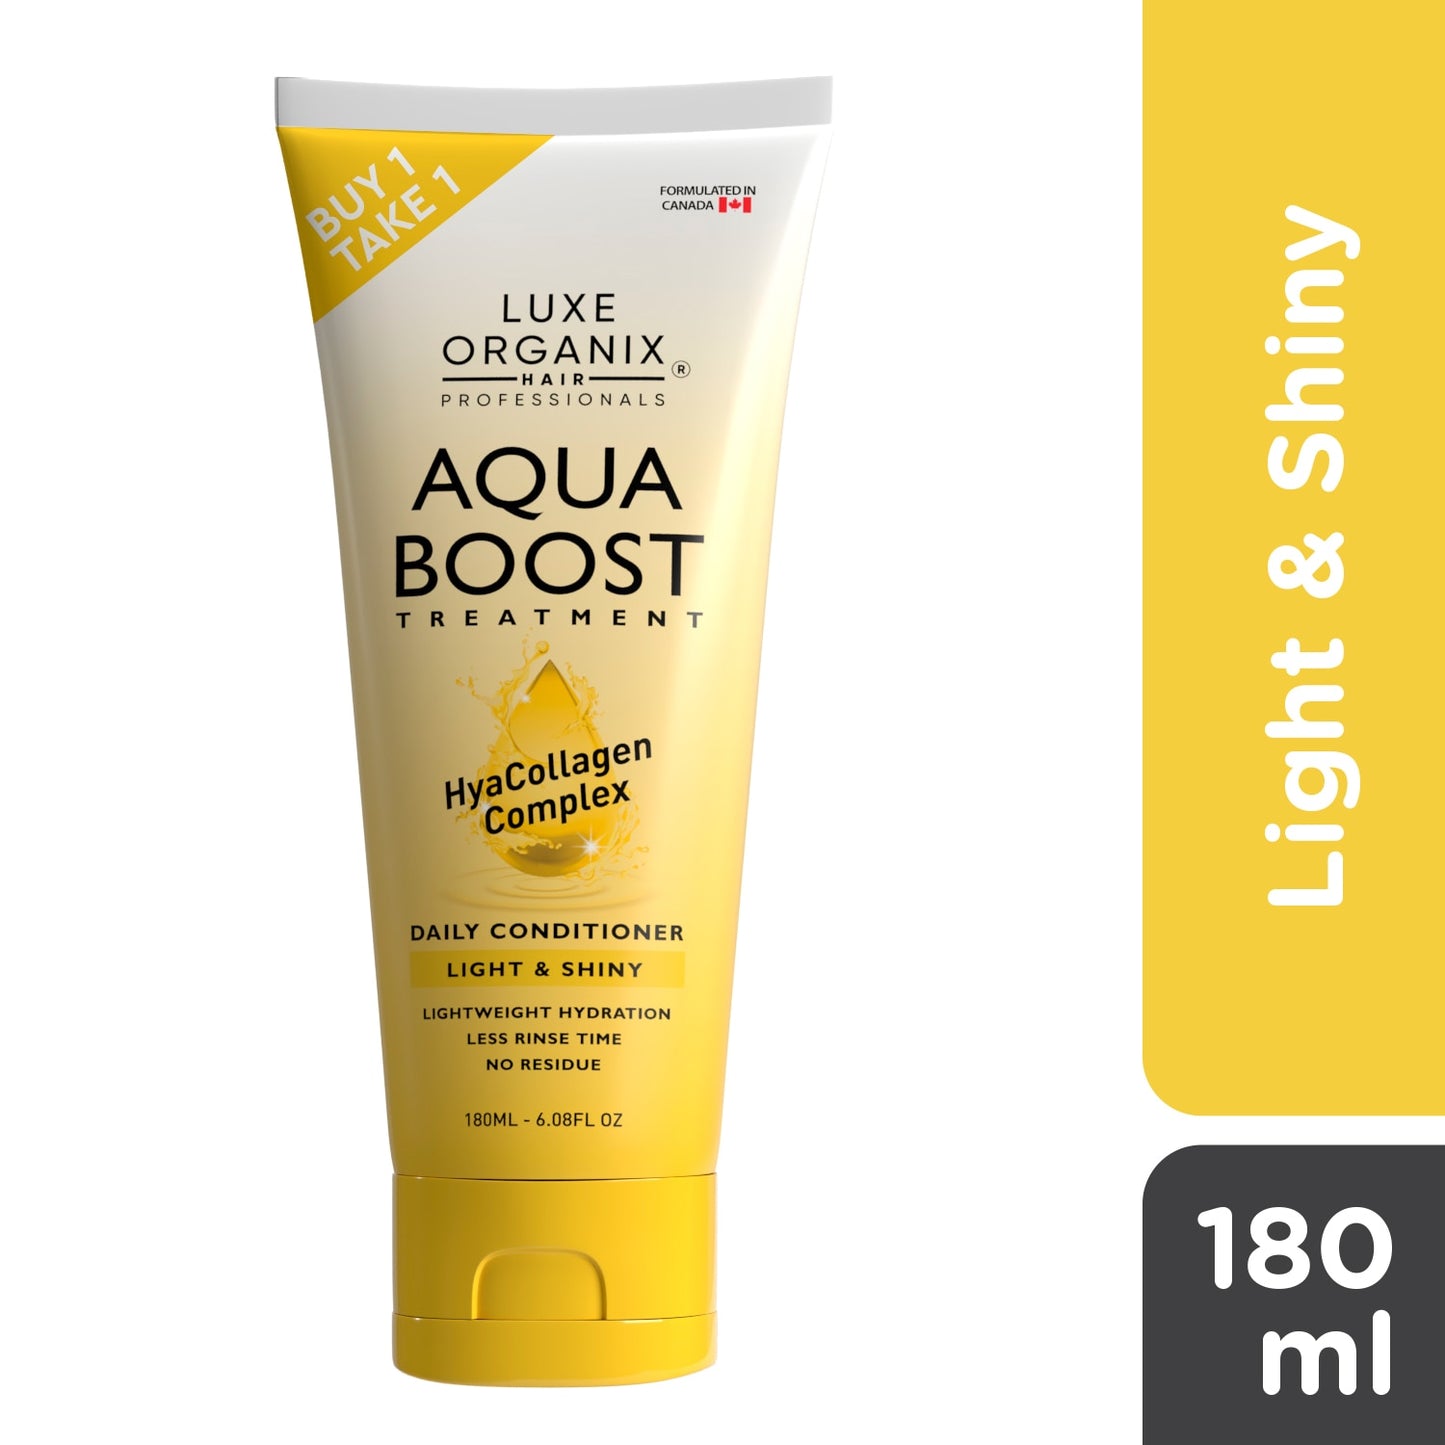 Luxe Organix Aqua Boost Treatment